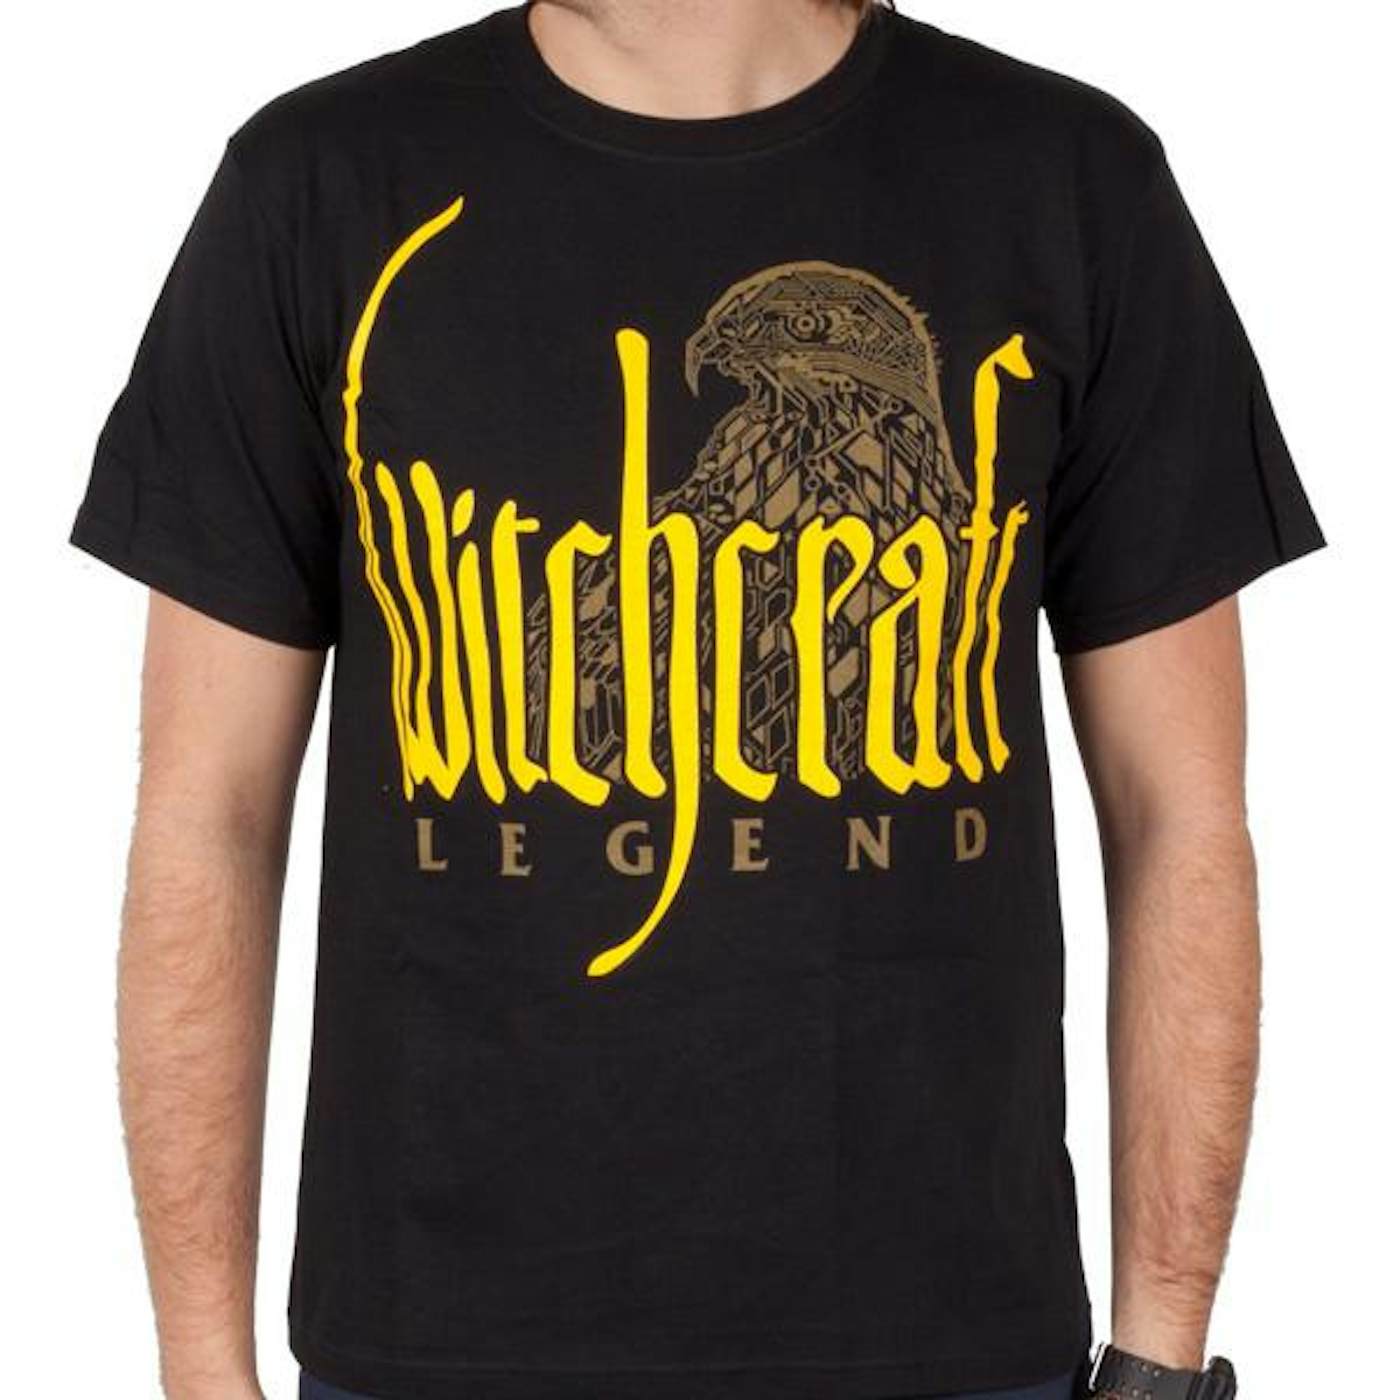 Witchcraft "Legend" T-Shirt